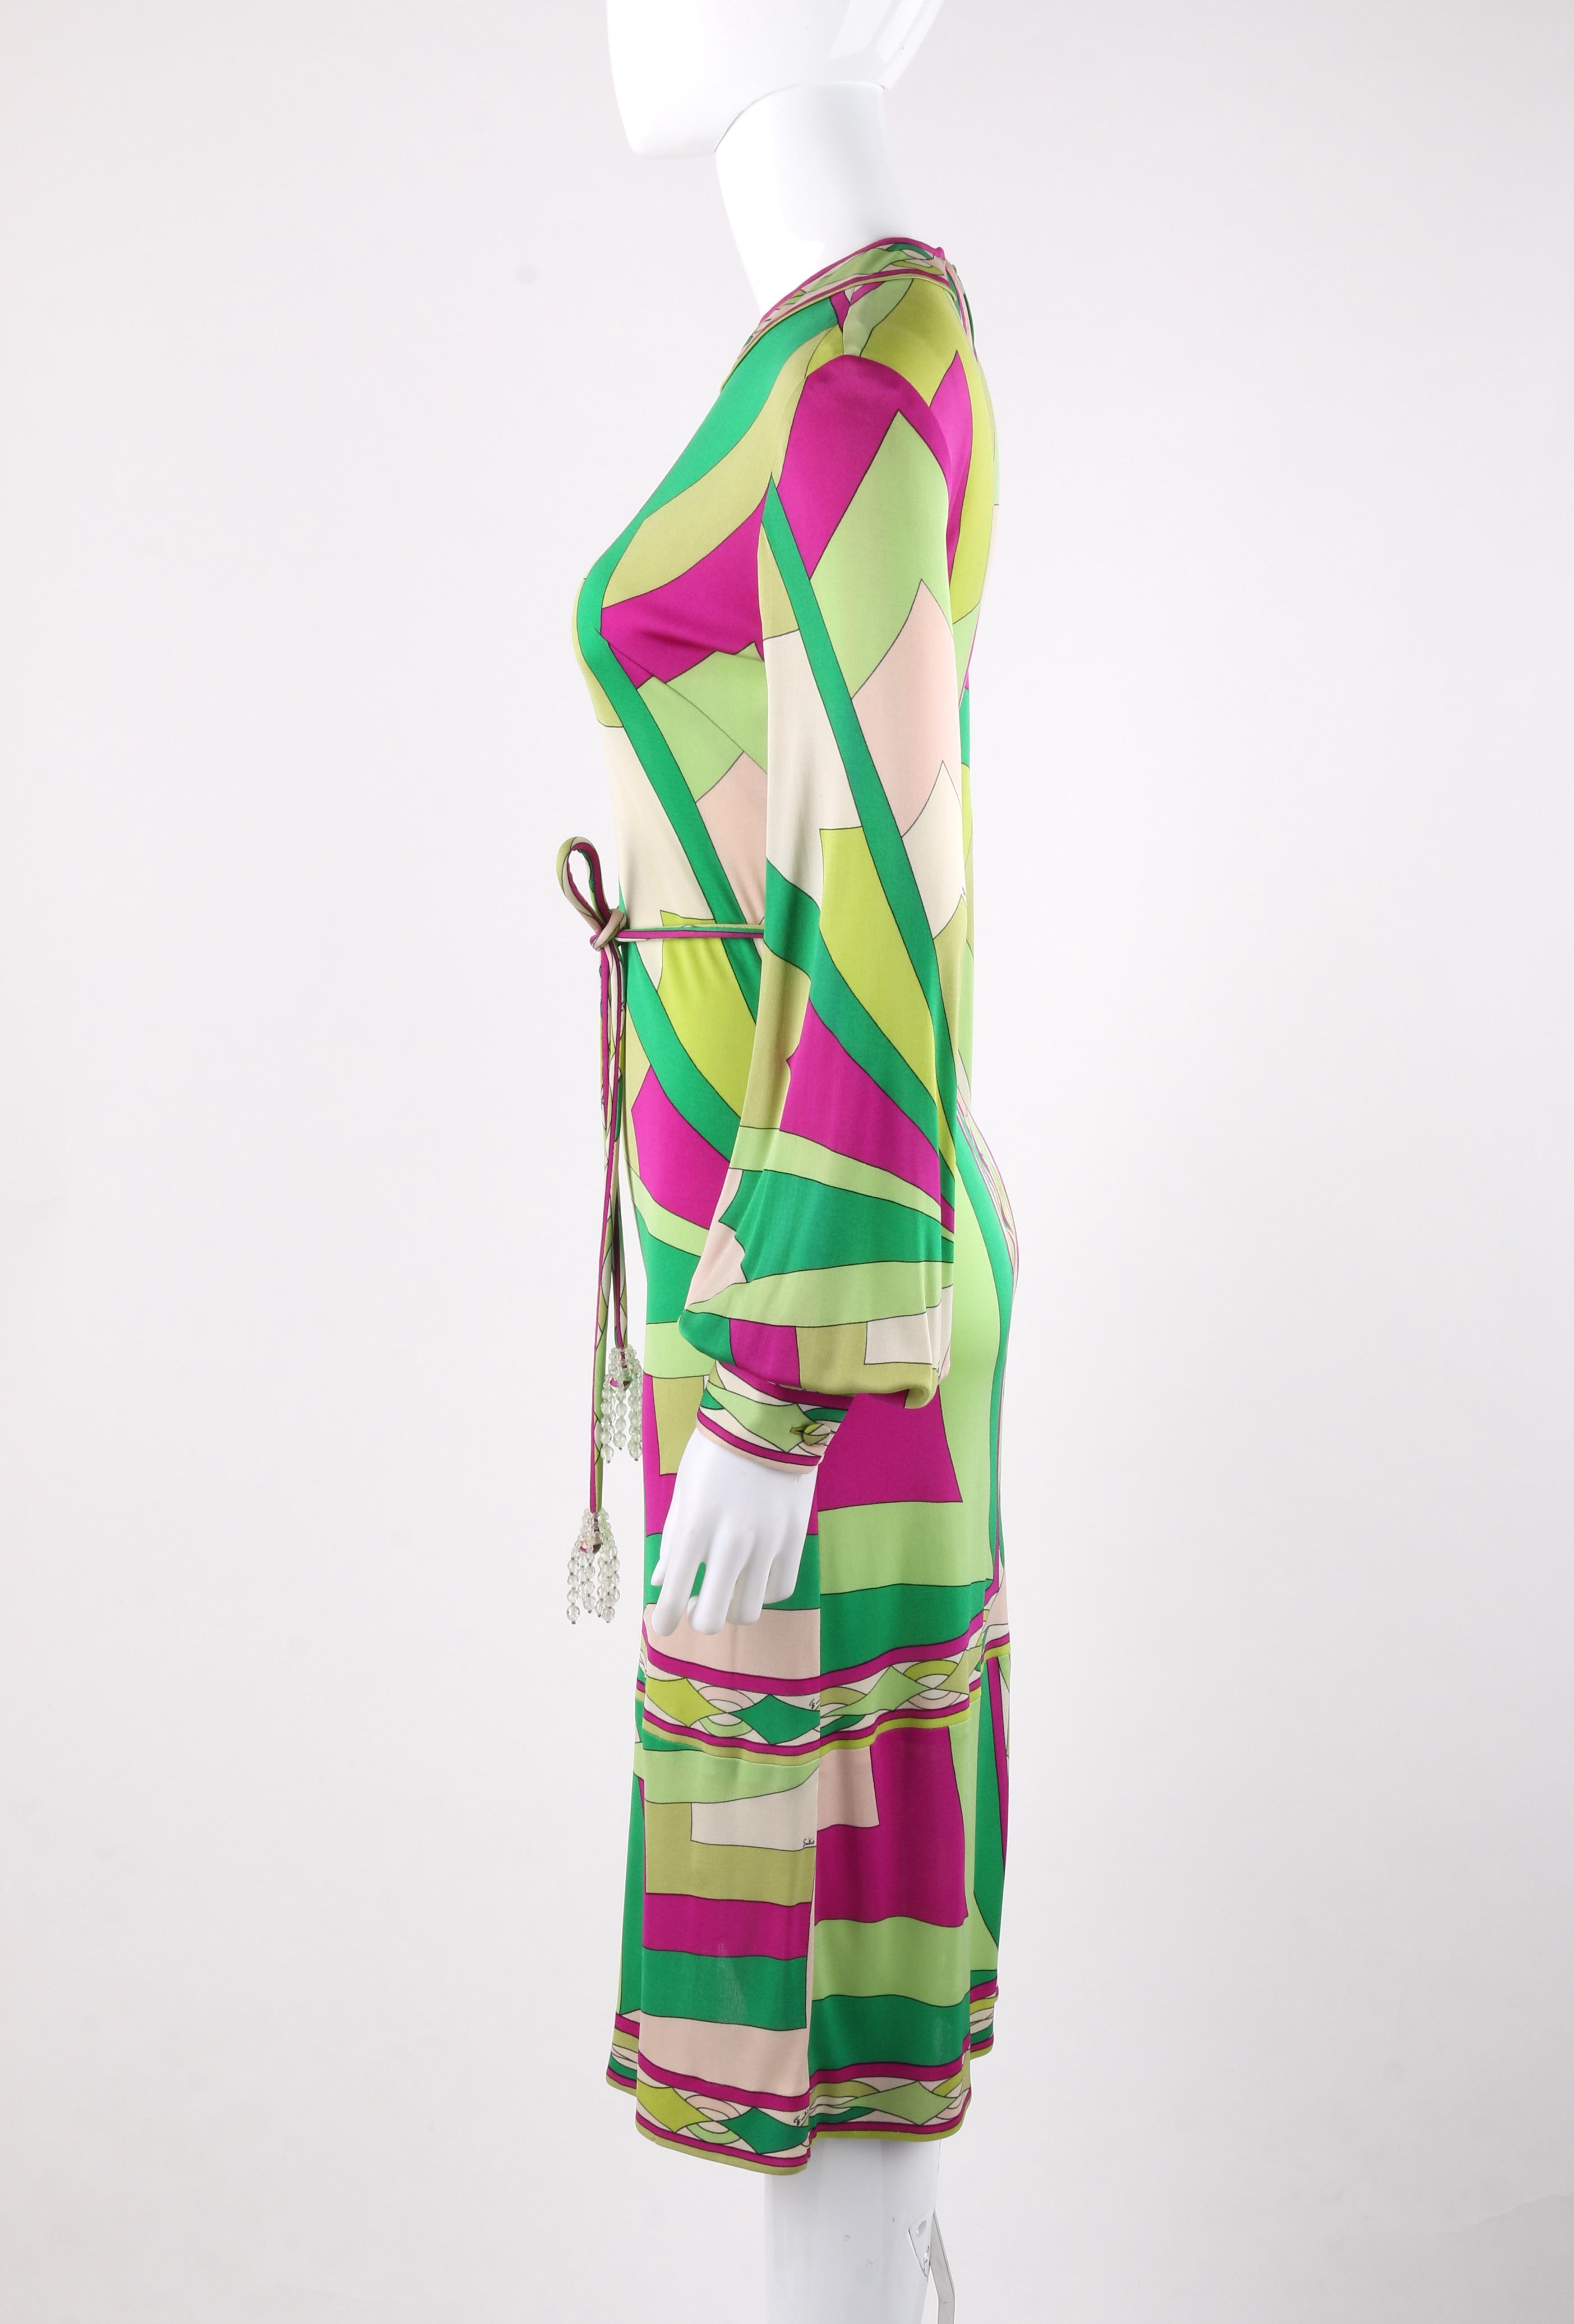 Beige EMILIO PUCCI c.1960's Signature Print Silk Knit Coppola E Toppo Shift Dress For Sale